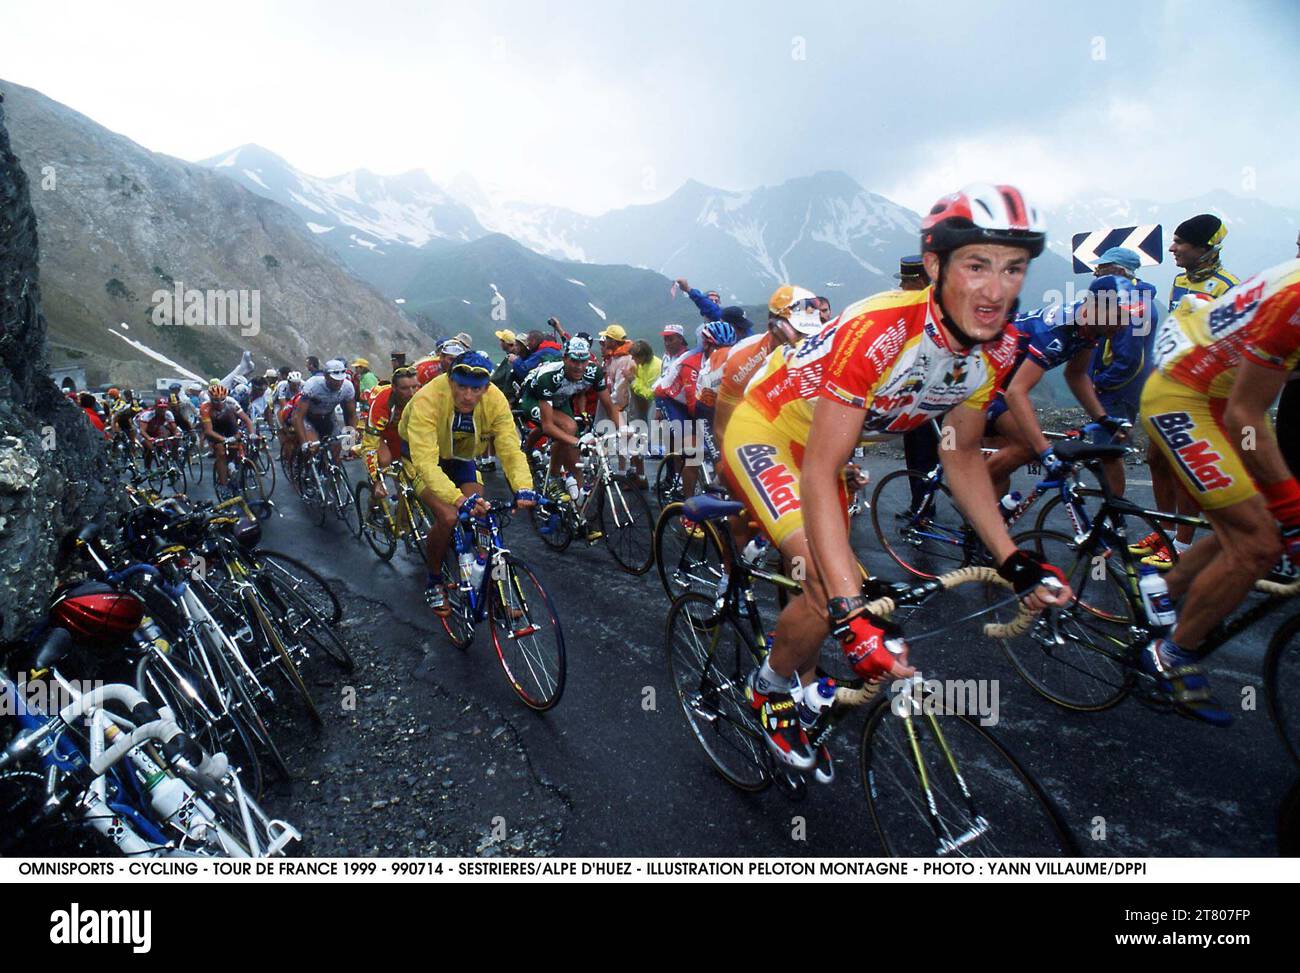 CYCLING - TOUR DE FRANCE 1999 - 990714 - SESTRIERES/ALPE D'HUEZ - ILLUSTRATION PELOTON MONTAGNE - PHOTO : YANN VILLAUME/DPPI # 20000085 107 Stock Photo